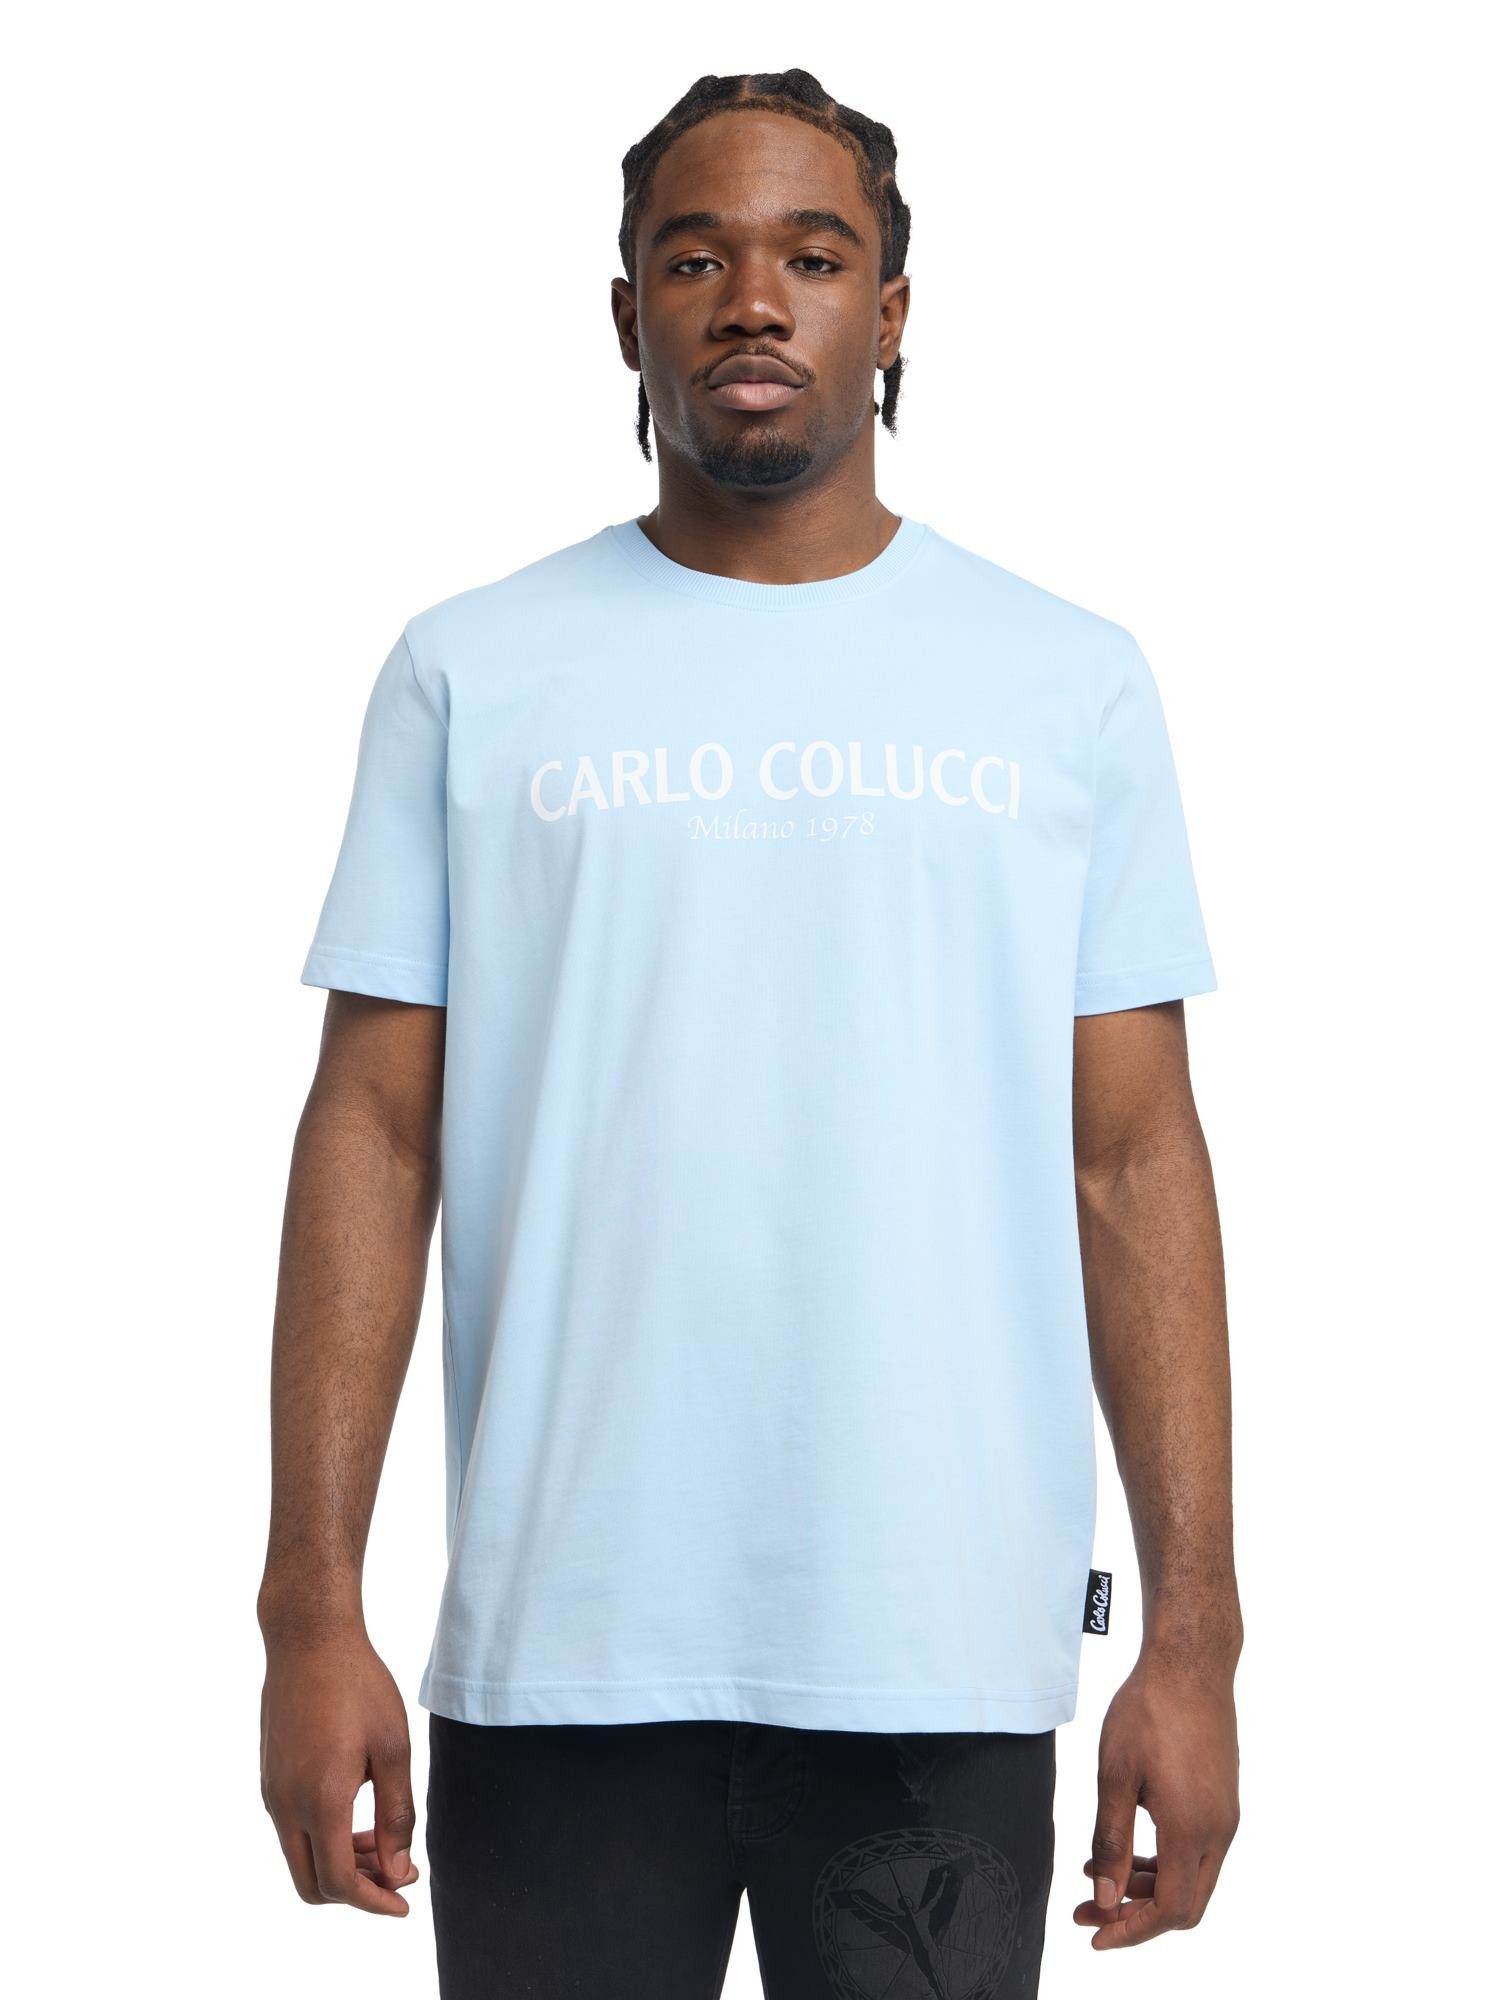 CARLO COLUCCI T-Shirt di Comun